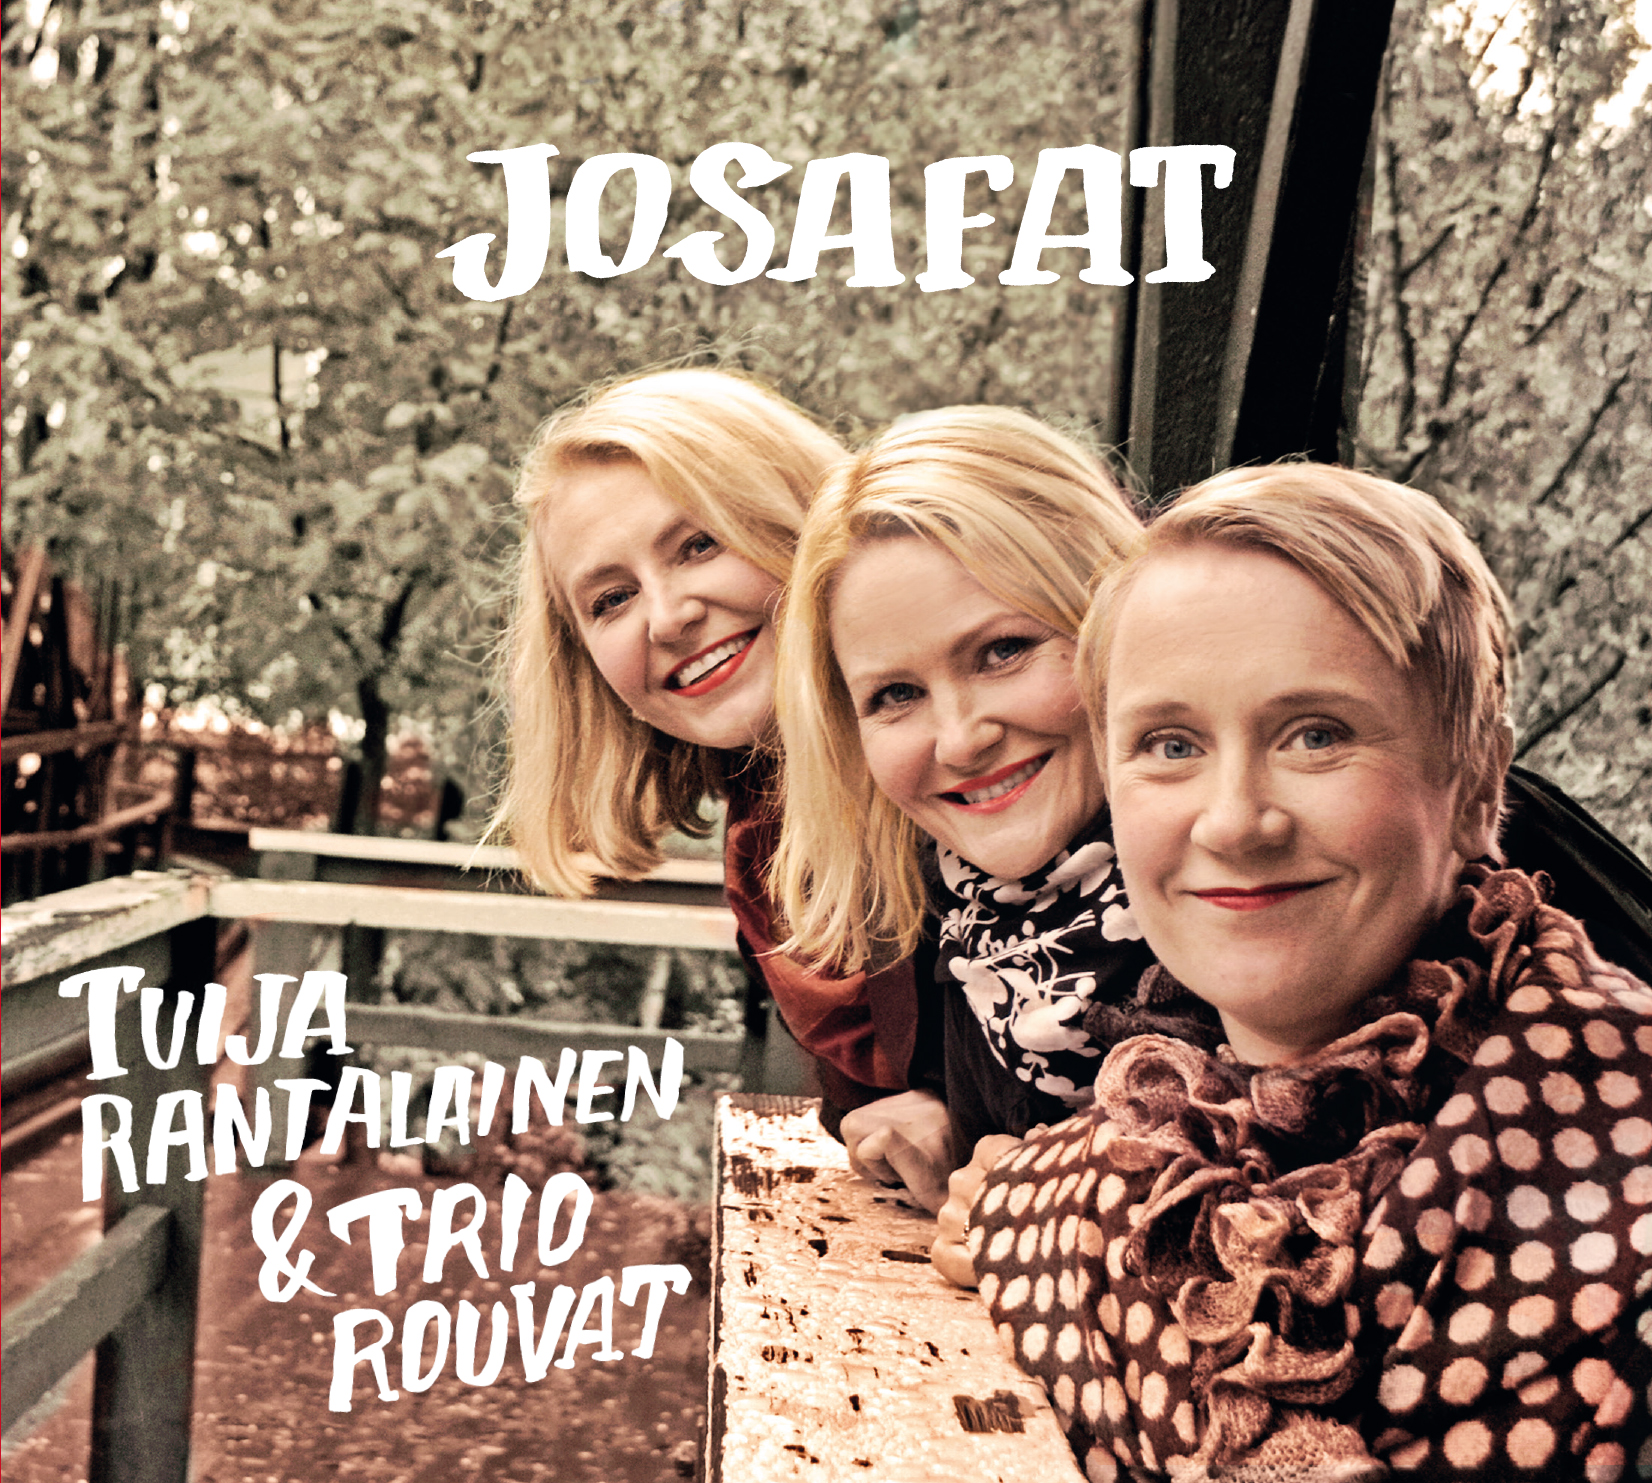 Tuija Rantalainen & Trio Rouvat - Josafat - CD